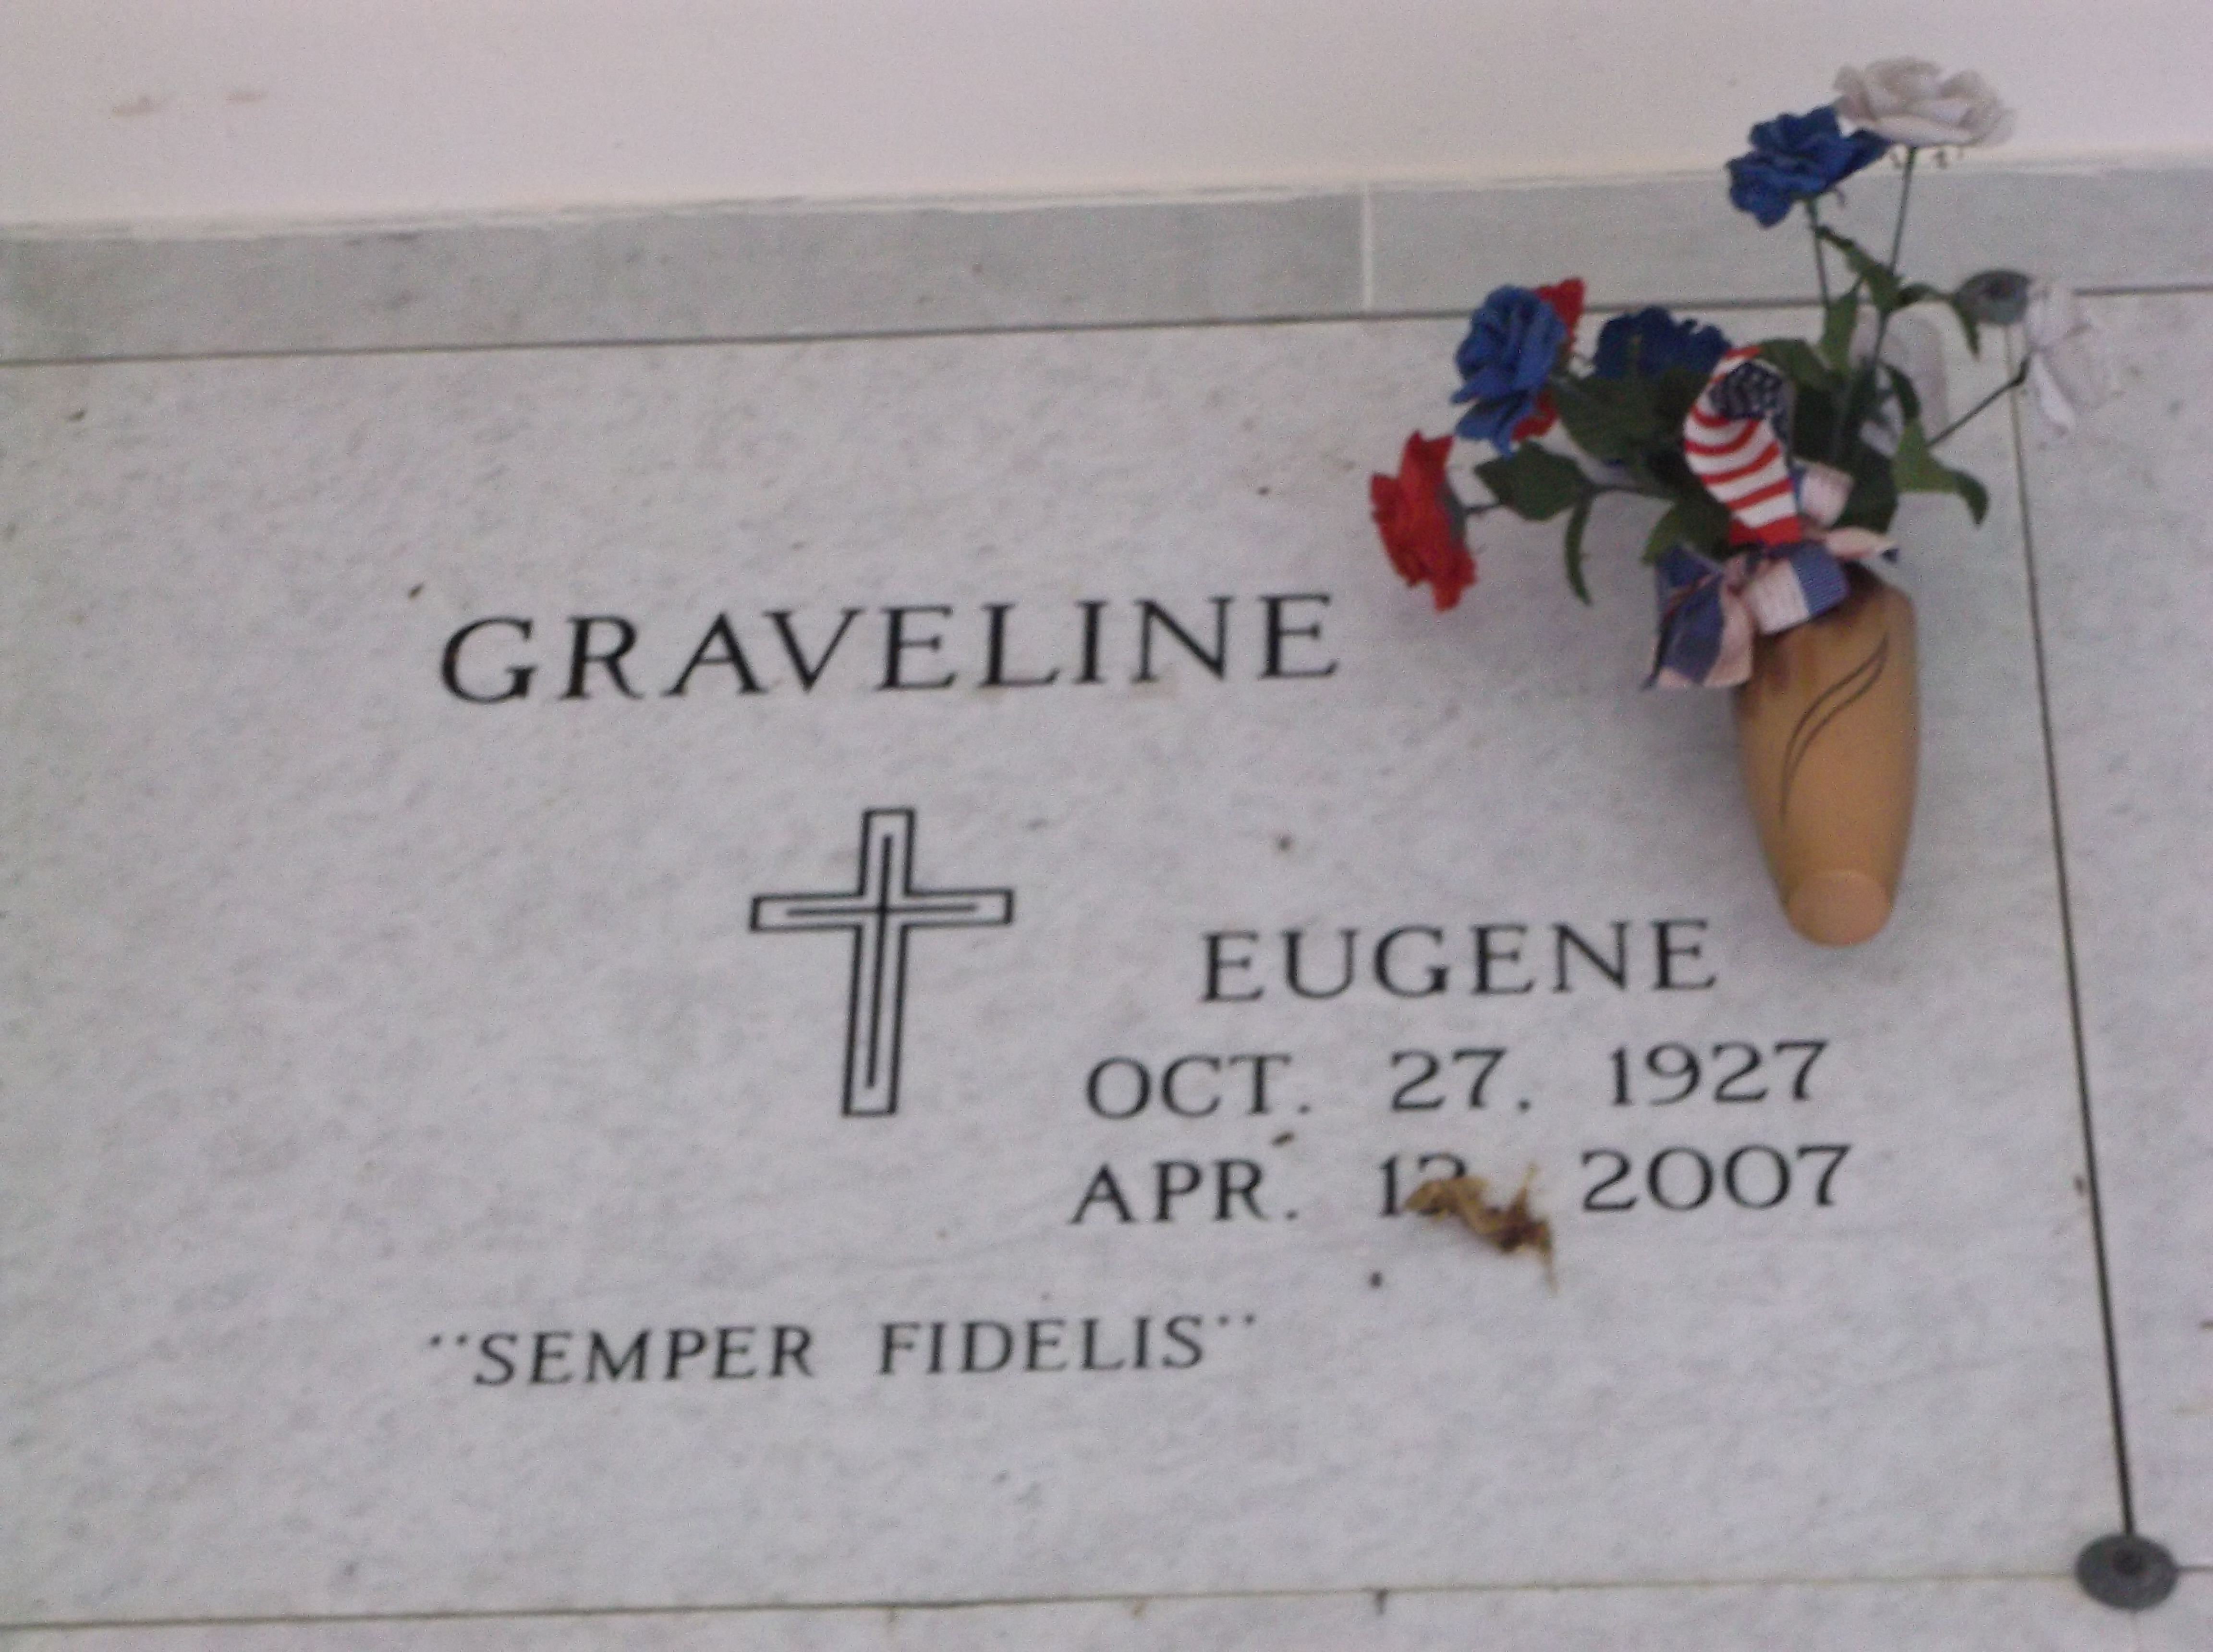 Eugene Graveline